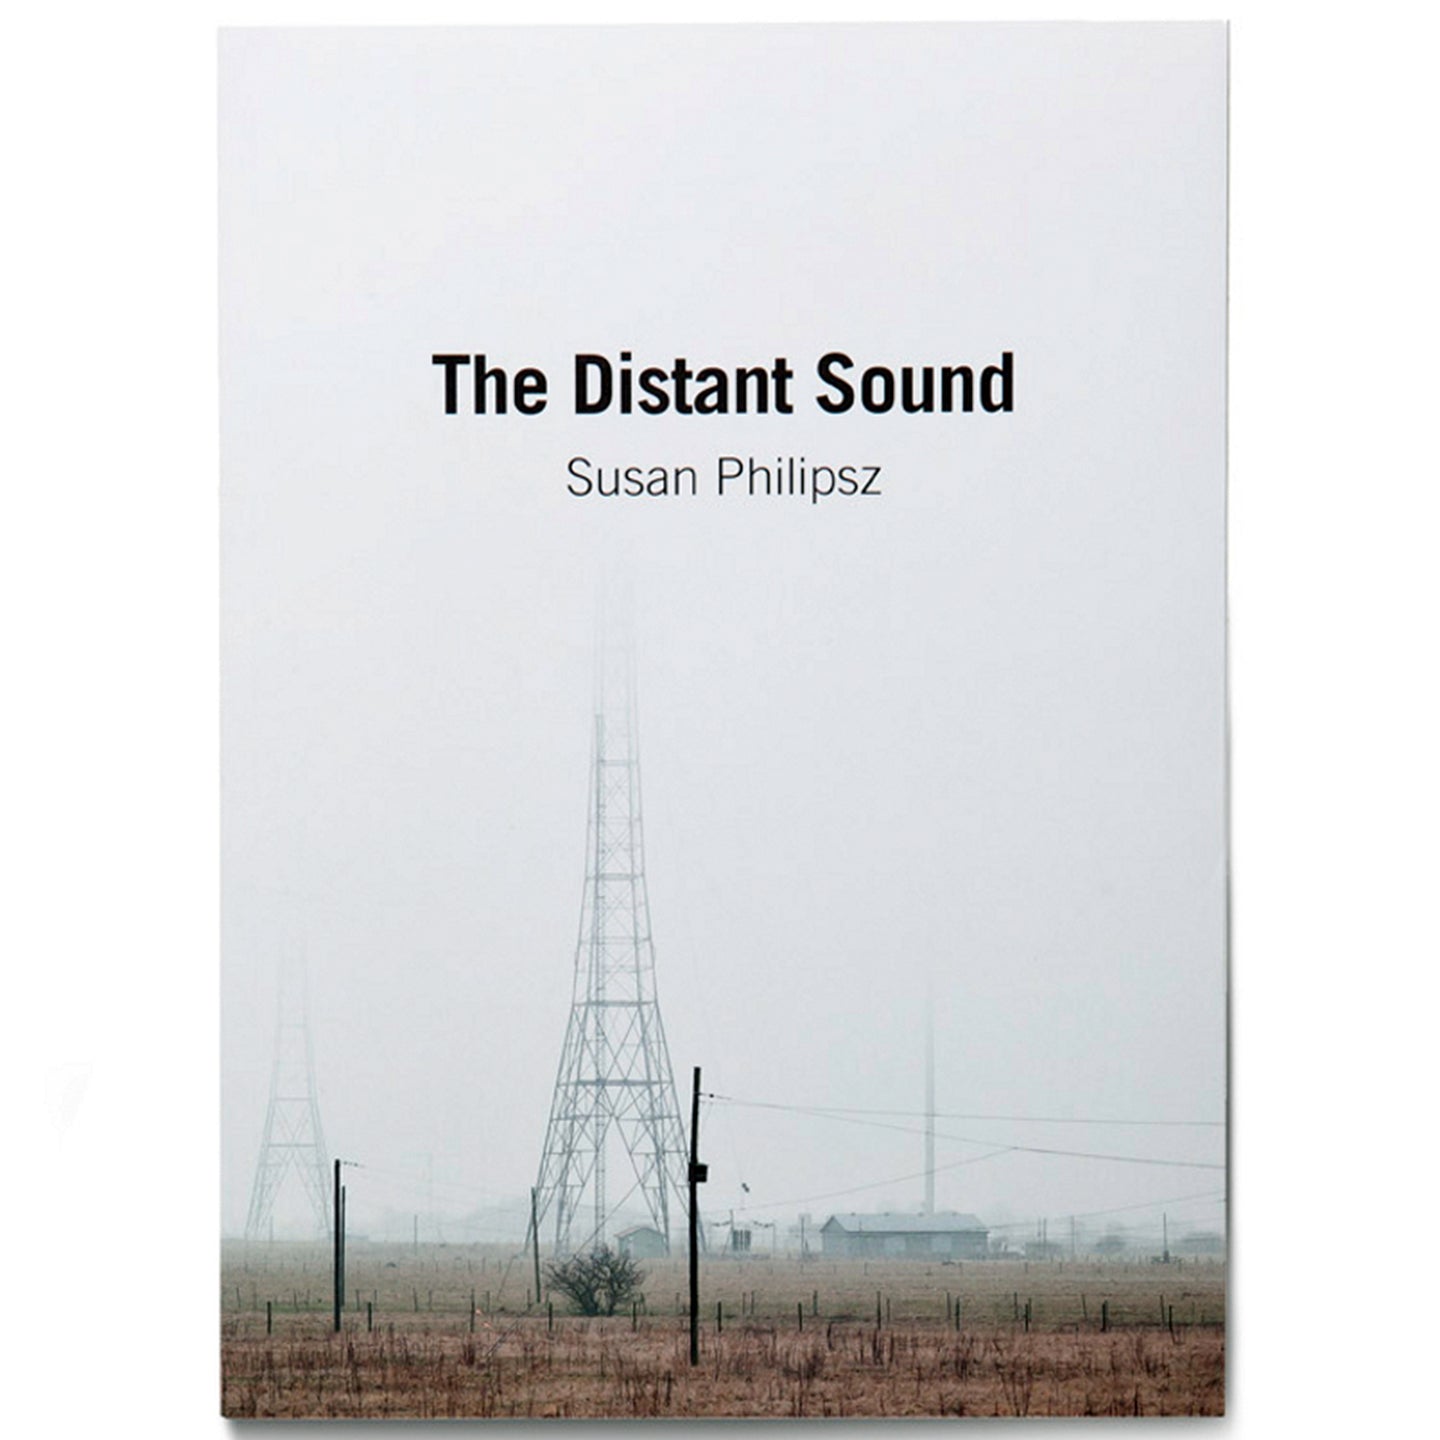 SUSAN PHILIPSZ: THE DISTANT SOUND